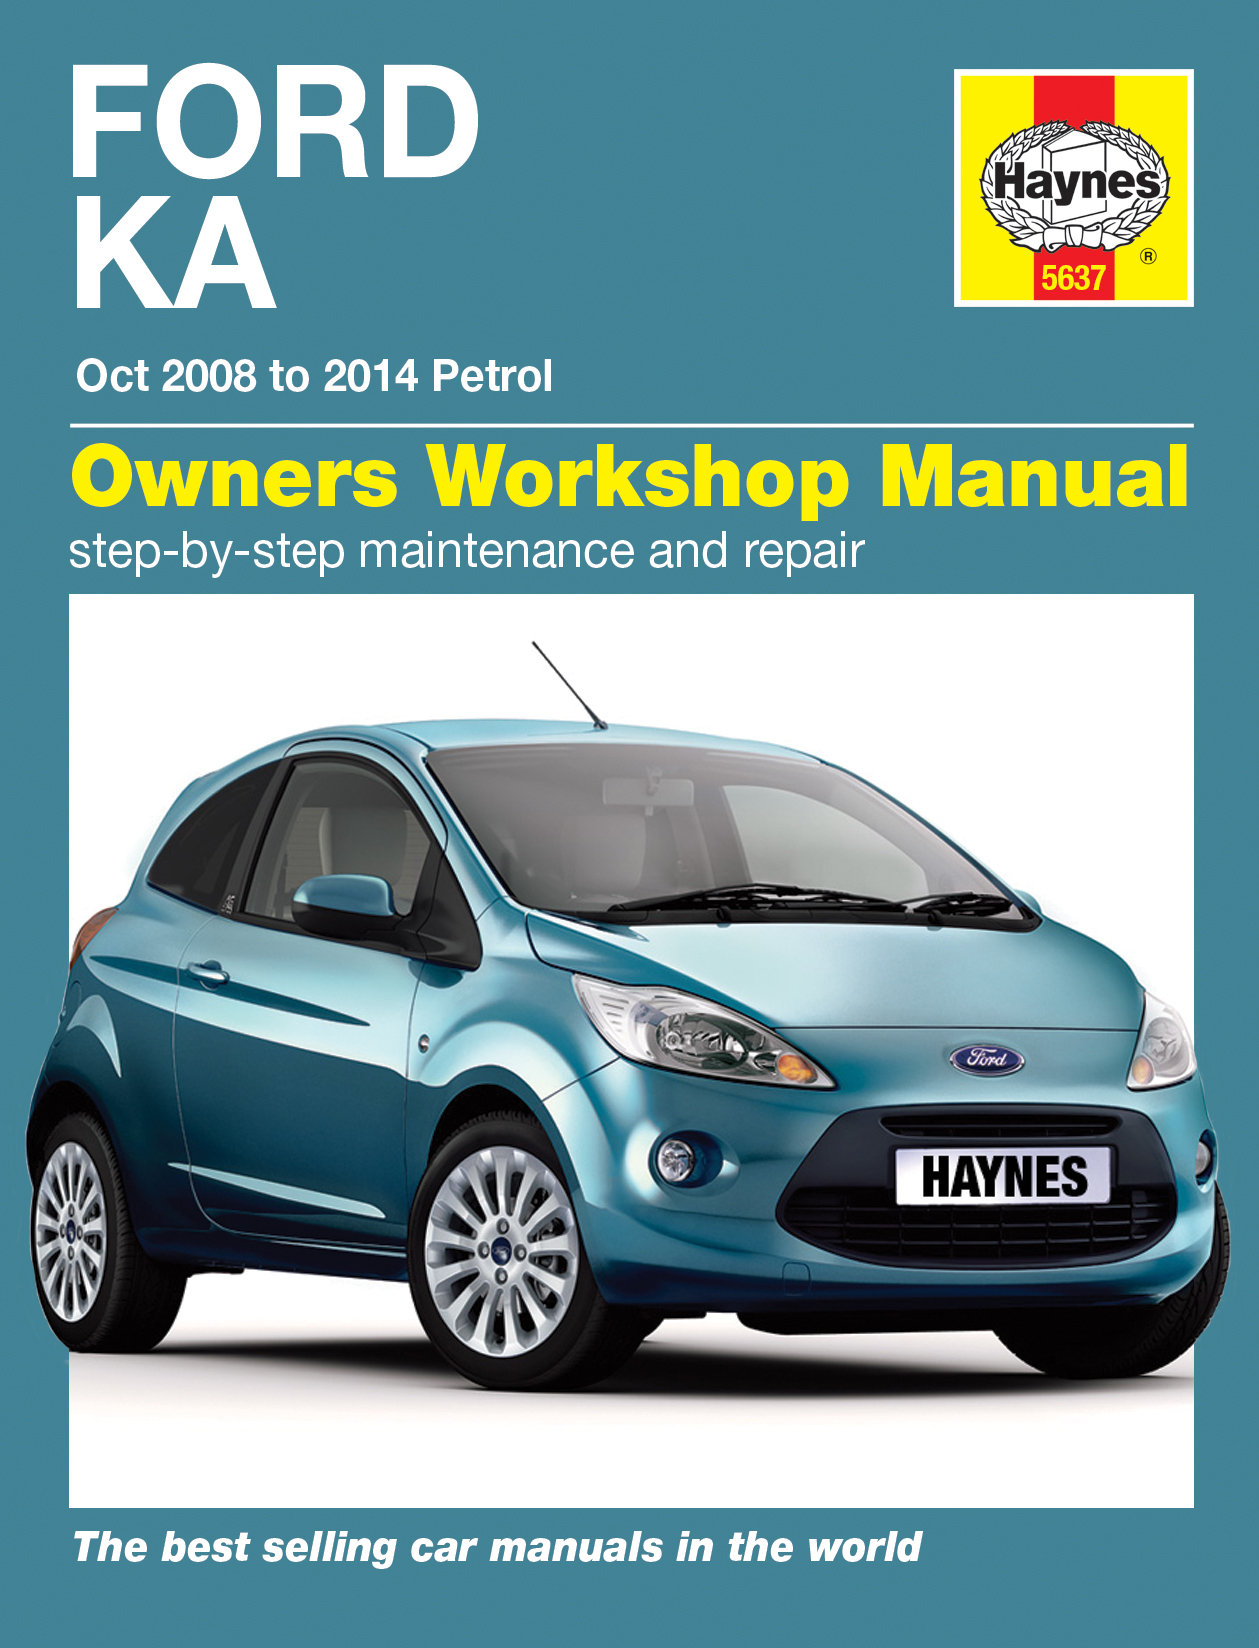 Ford workshop repair manuals #4